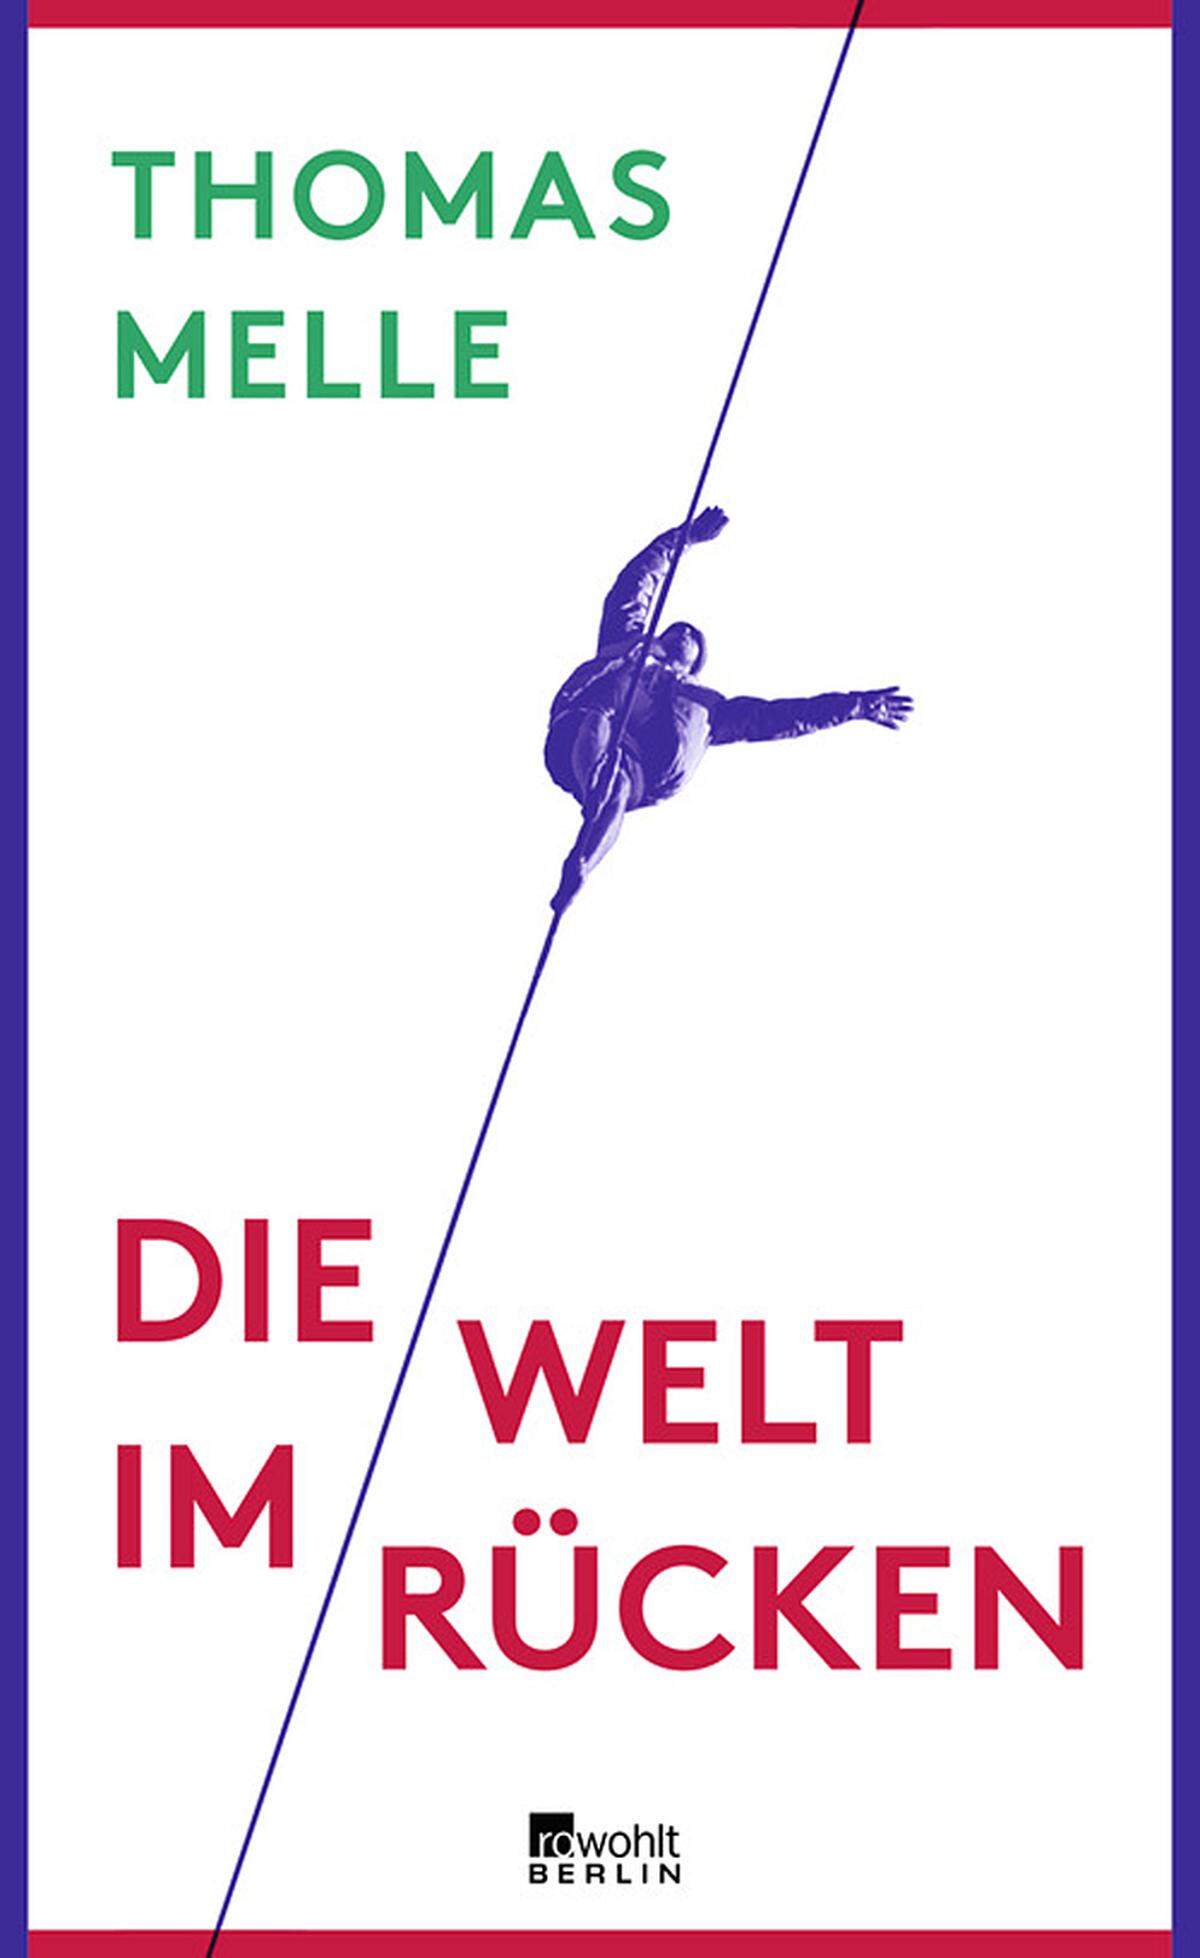 Der deutsche Autor Thomas Melle schildert in "Die Welt im Rücken" seine manisch-depressive Erkrankung. Thomas Melle (41) kam in Bonn zur Welt und lebt in Berlin. Drei Romane hat er geschrieben - alle waren für den Buchpreis nominiert. Neben seiner Autoren-Arbeit übersetzt er auch aus dem Englischen.